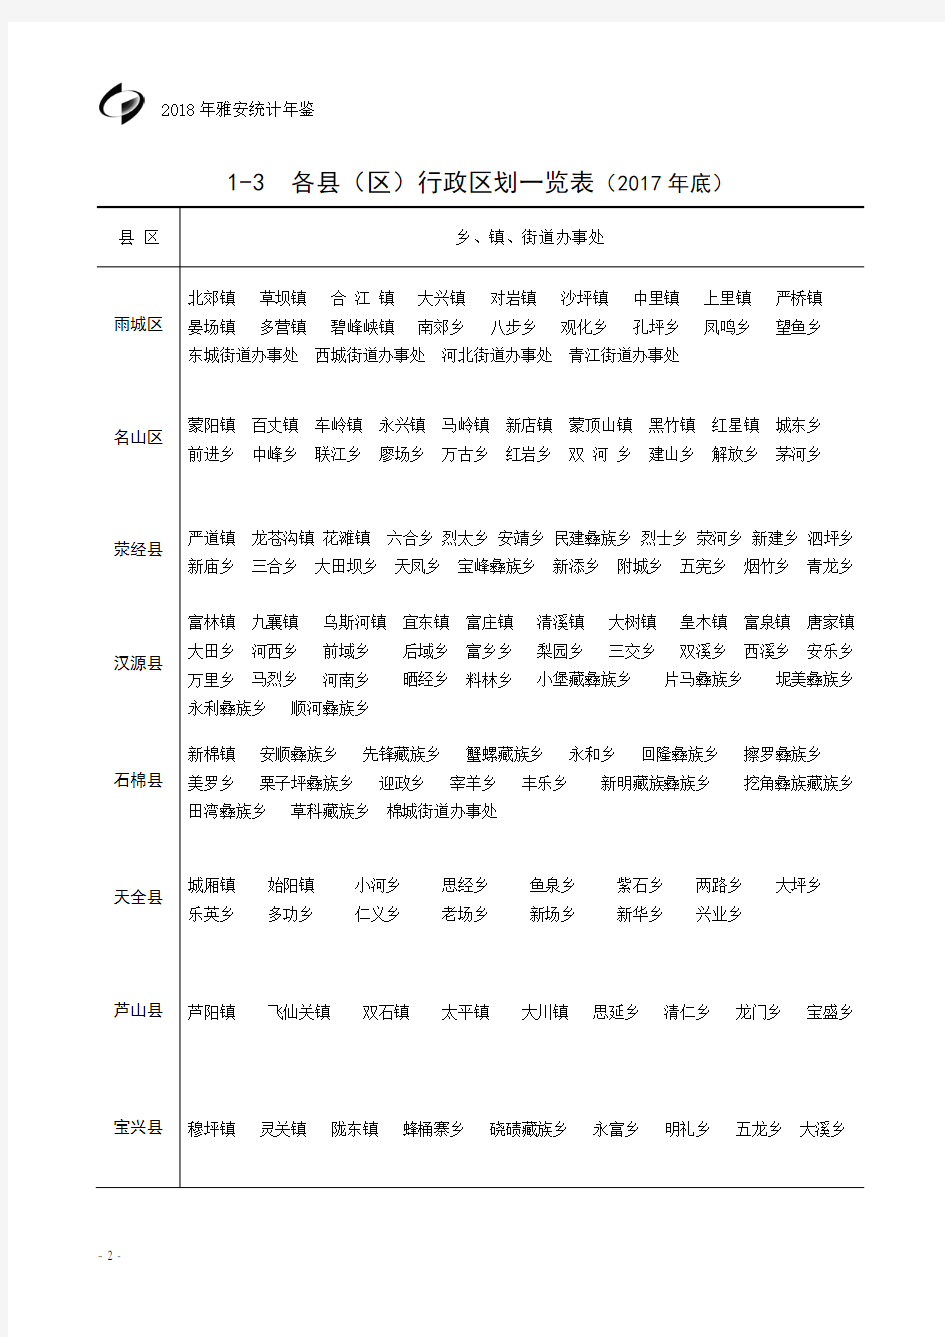 雅安各县(区)行政区划一览表(2017年底)